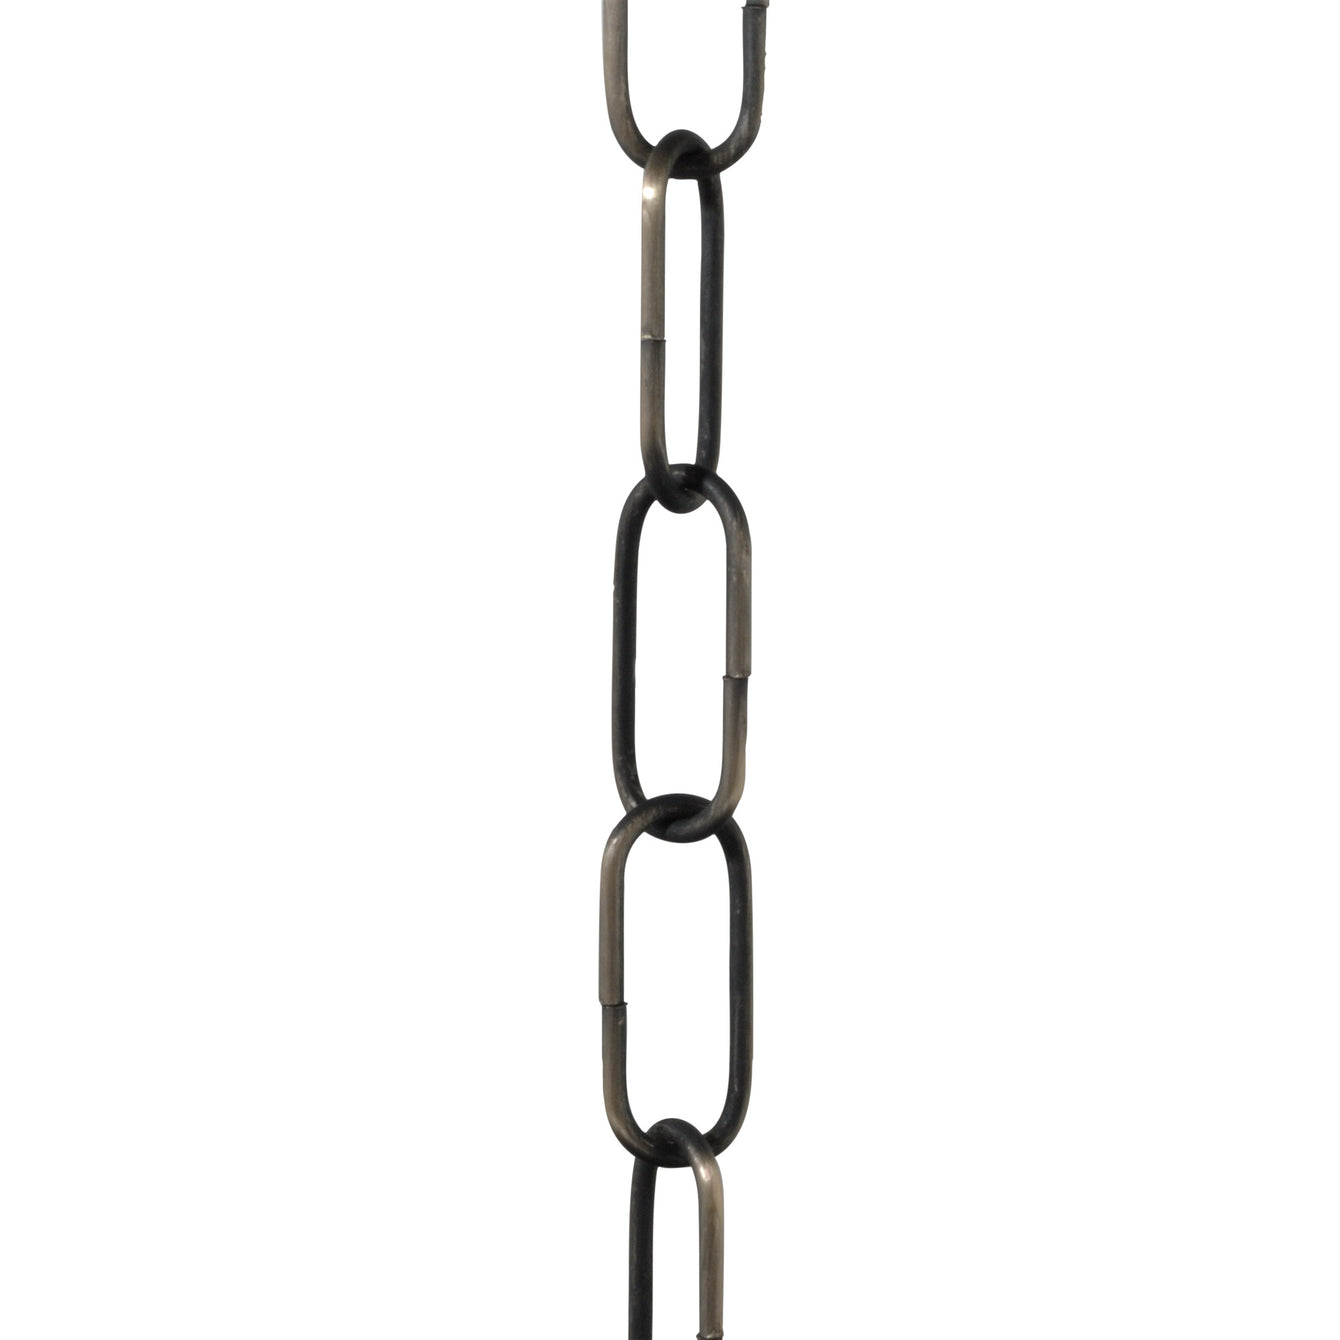 ElekTek Open Link Chain For Chandelier and Lighting Medium 38mm x 15mm Per Linear Metre - Buy It Better Steel